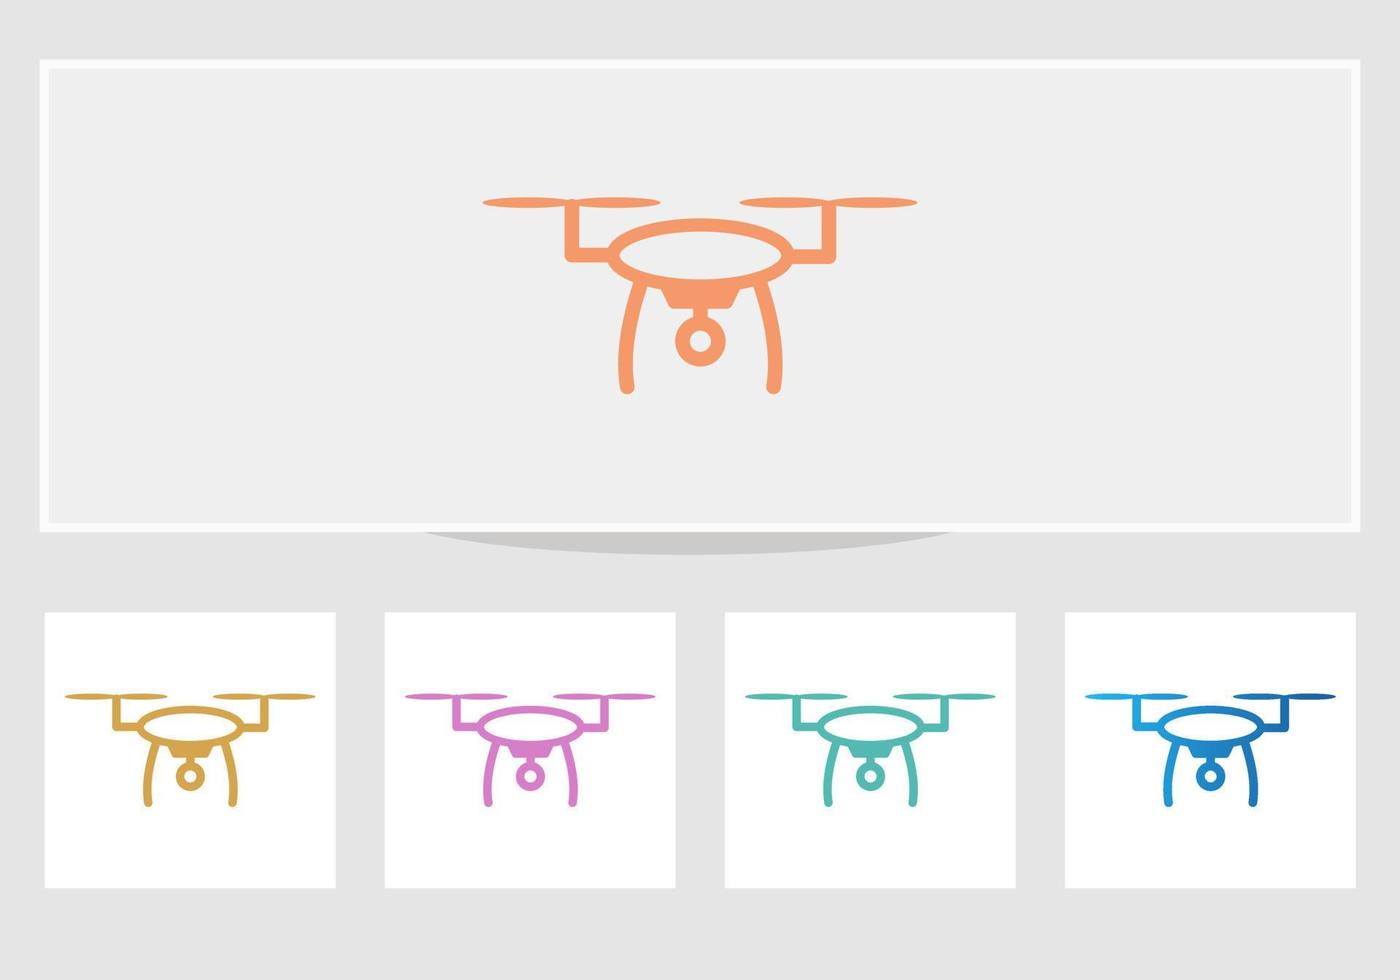 logotipo do drone. câmera de drone de fotografia aérea. ilustração em vetor logotipo de fotografia com moda moderna